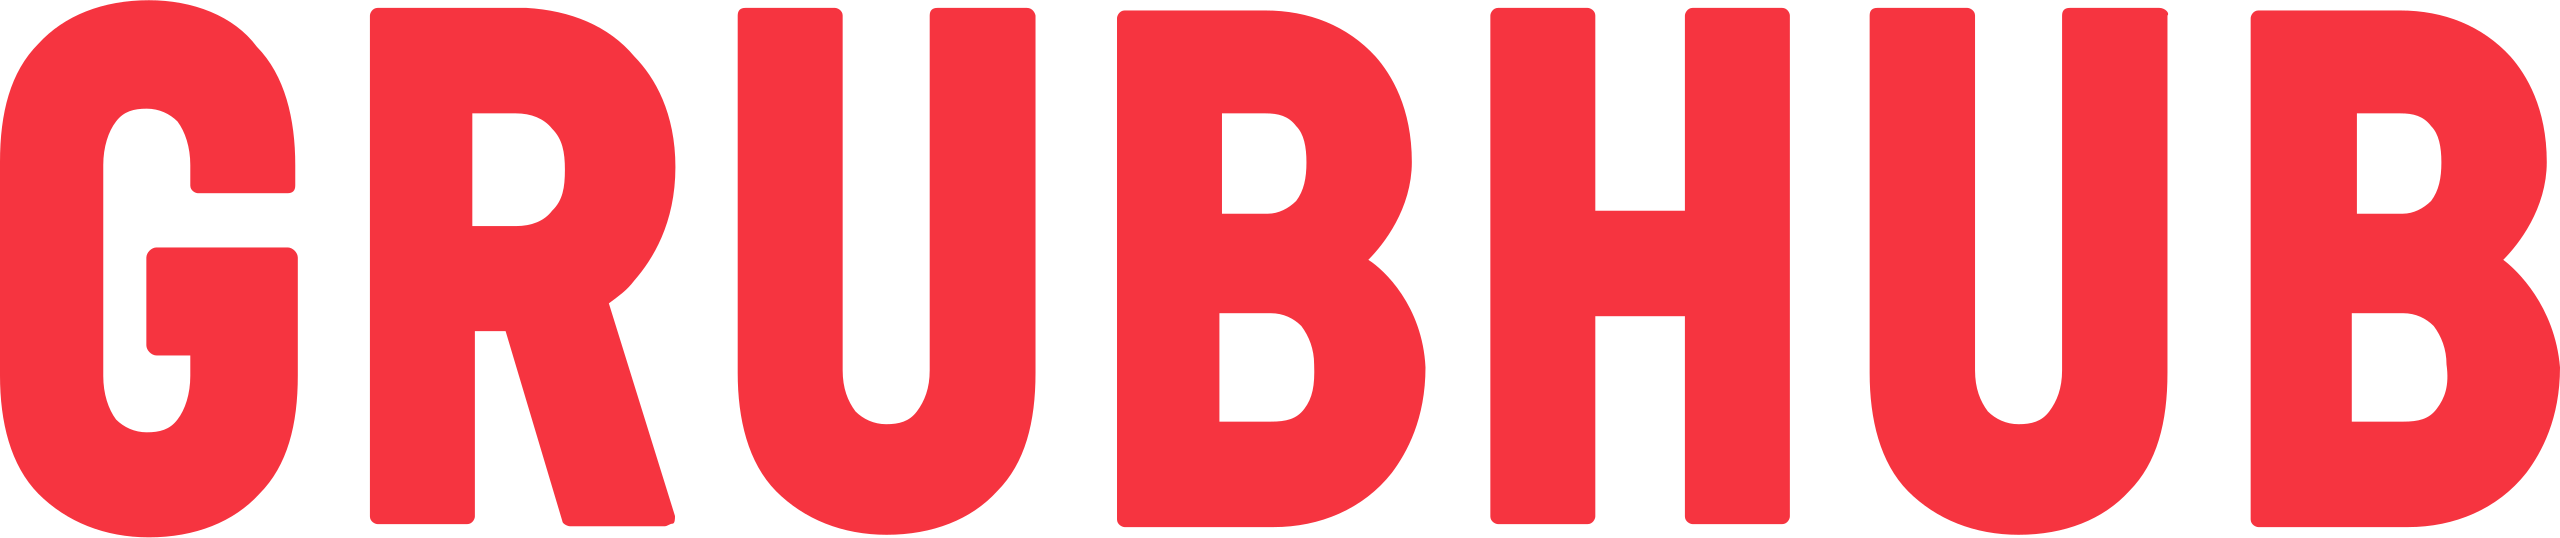 GrubHub